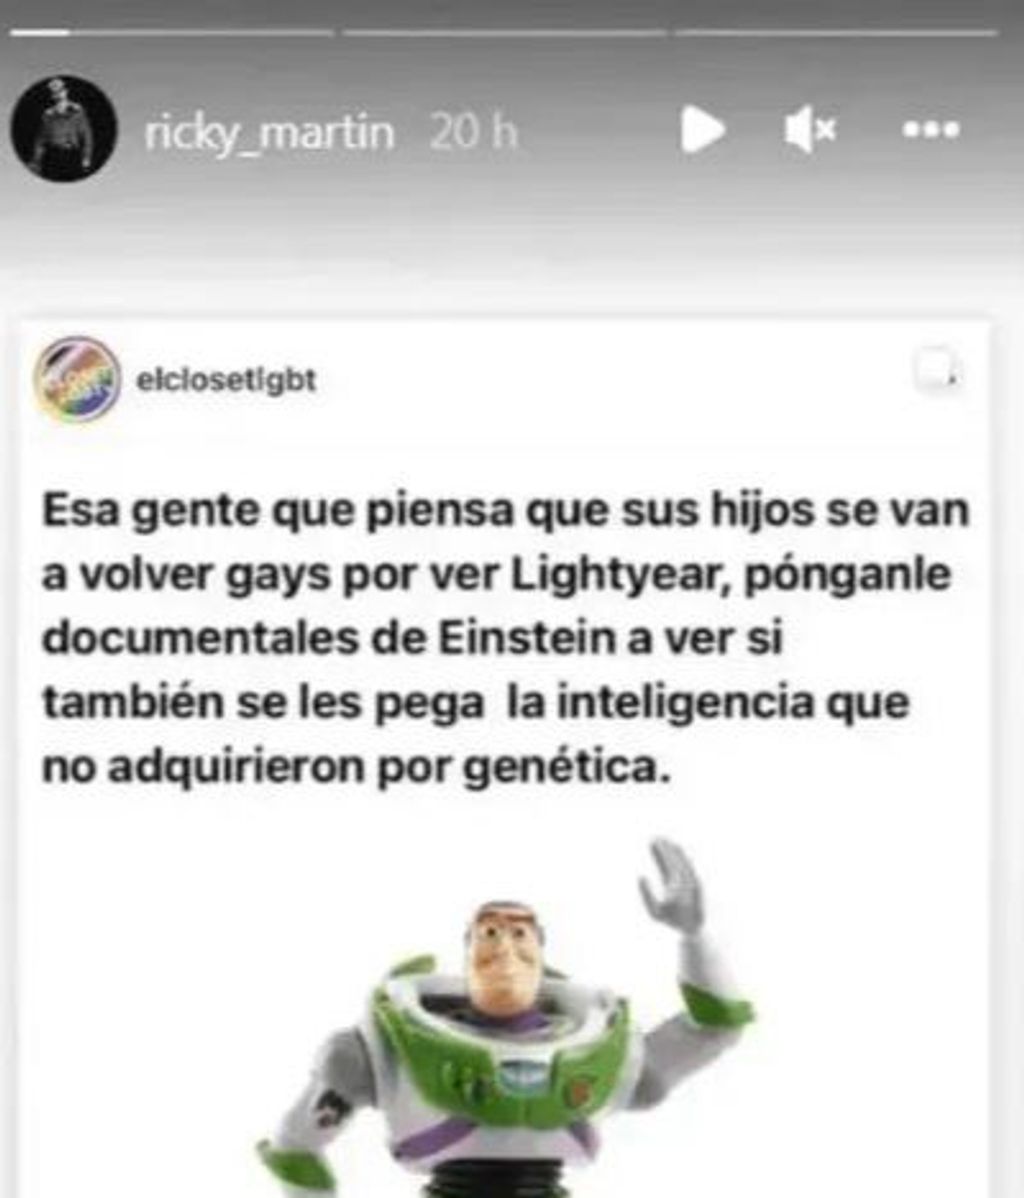 Imagen del Instagram de Ricky Martin defendiendo la película "Lightyear"